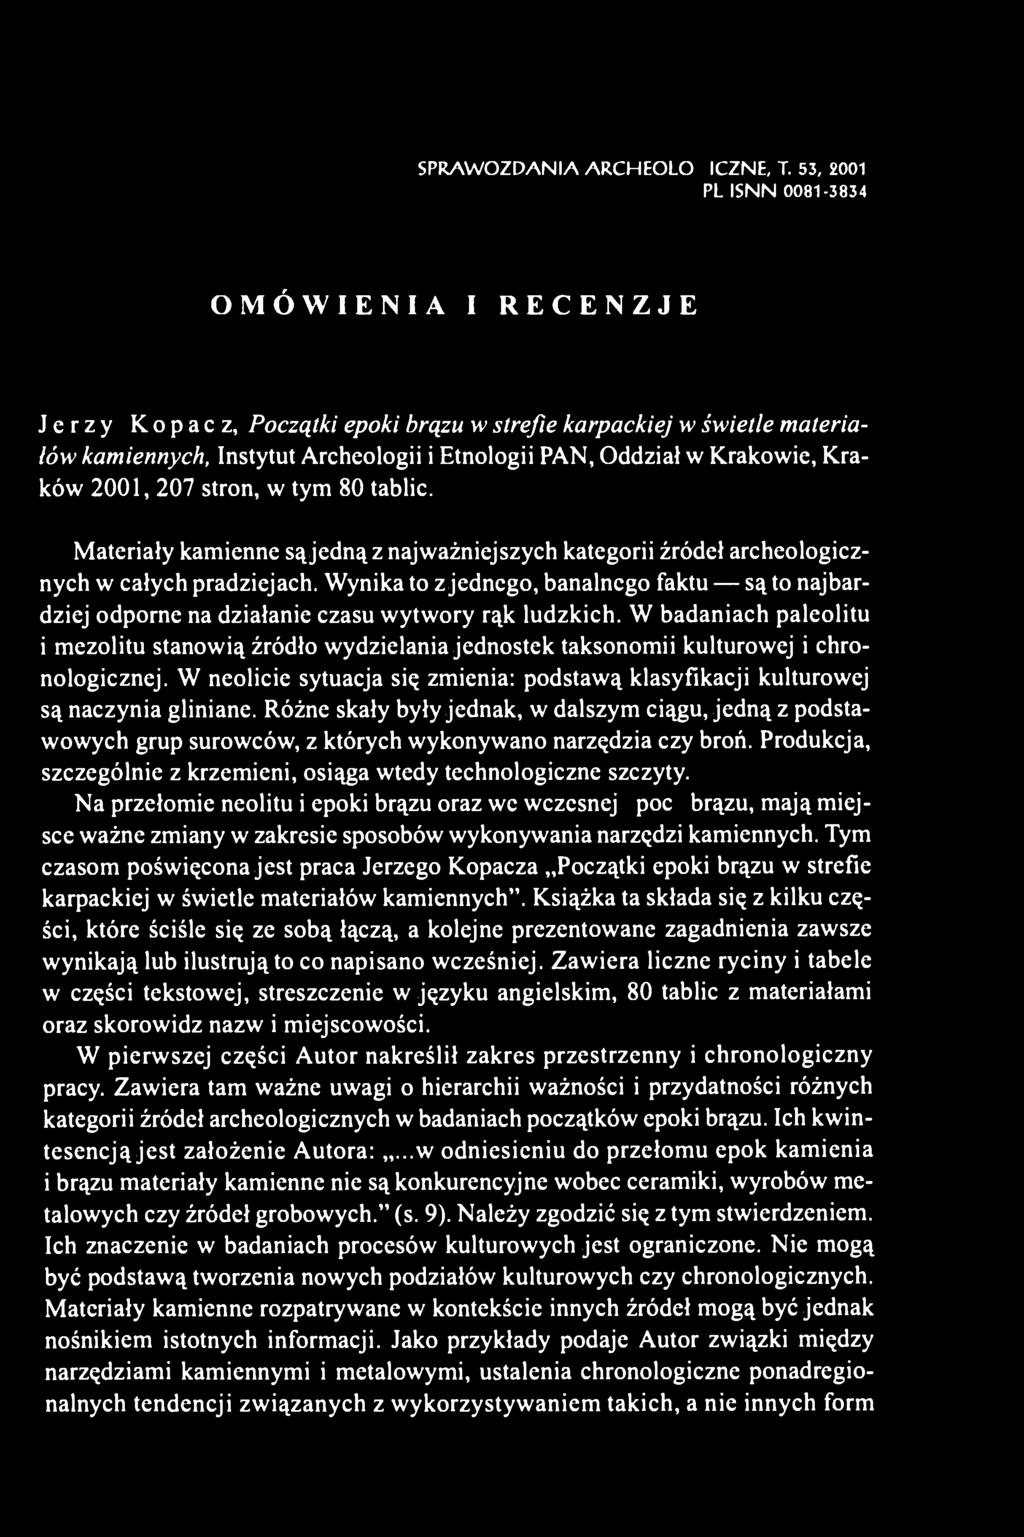 Kraków 2001, 207 stron, w tym 80 tablic. Materiały kamienne są jedną z najważniejszych kategorii źródeł archeologicznych w całych pradziejach.